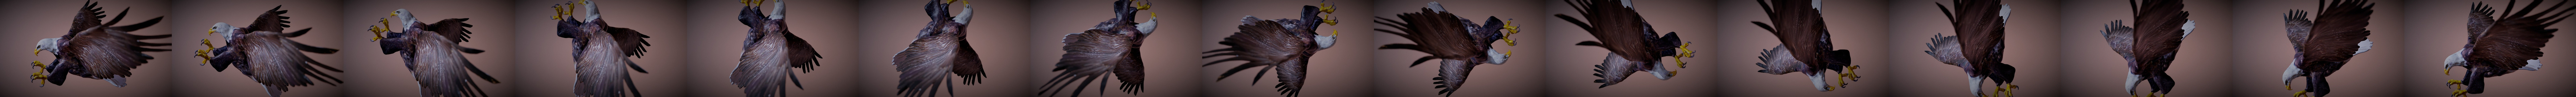 Bald Eagle Attack - Buy Royalty Free 3D model by Hong Nguyen  (@hongnguyen044) [65e44e9]